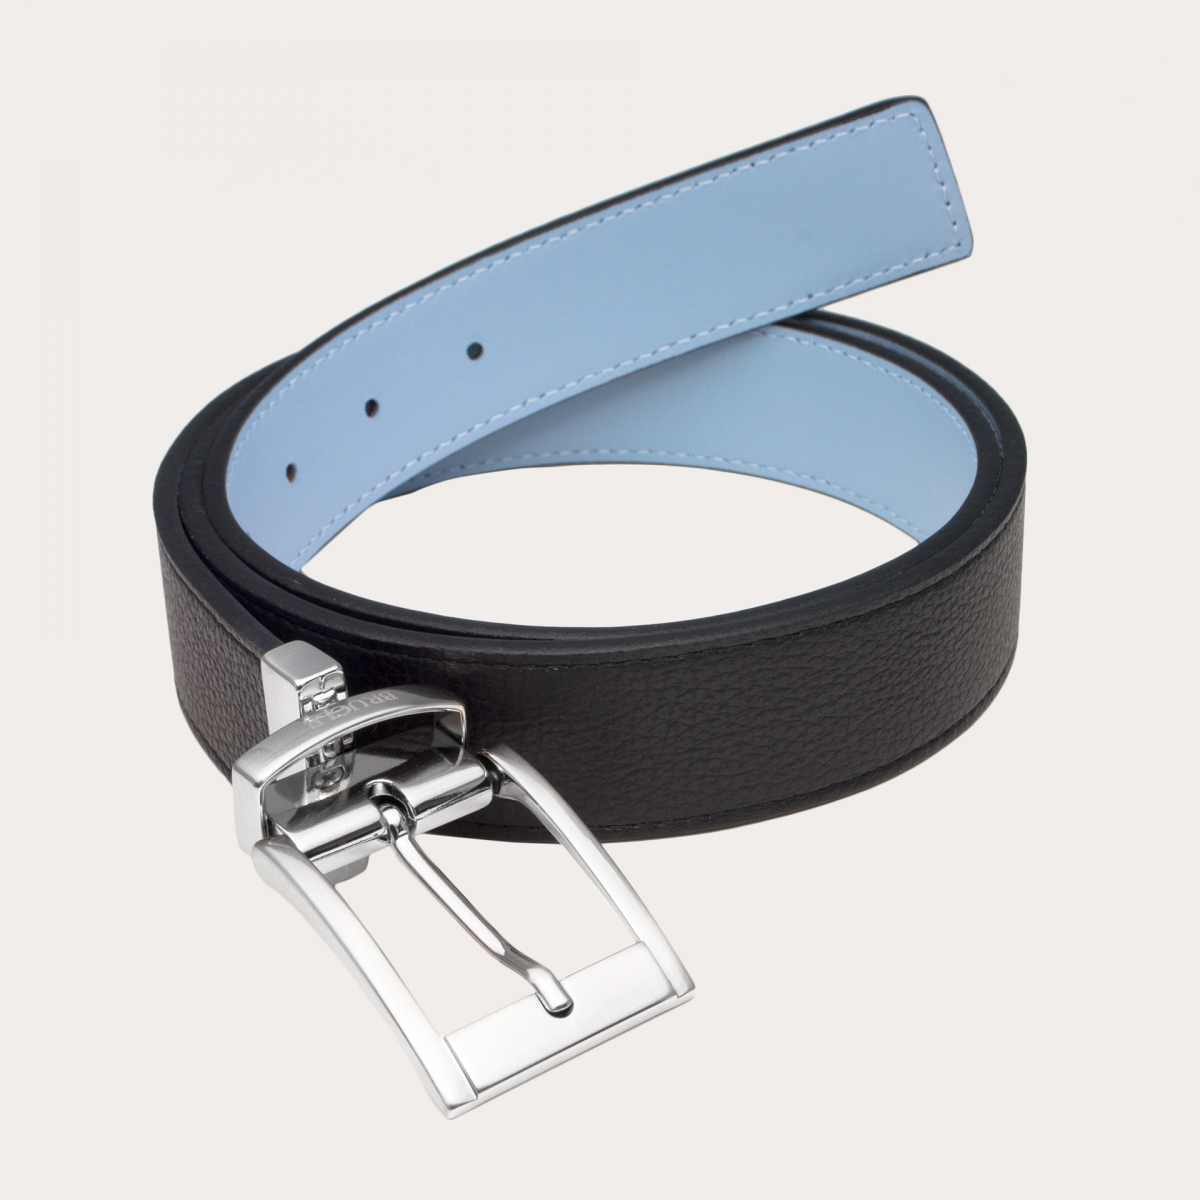 BRUCLE Cinturón reversible negro y azul en cuero genuino con punta cuadrada